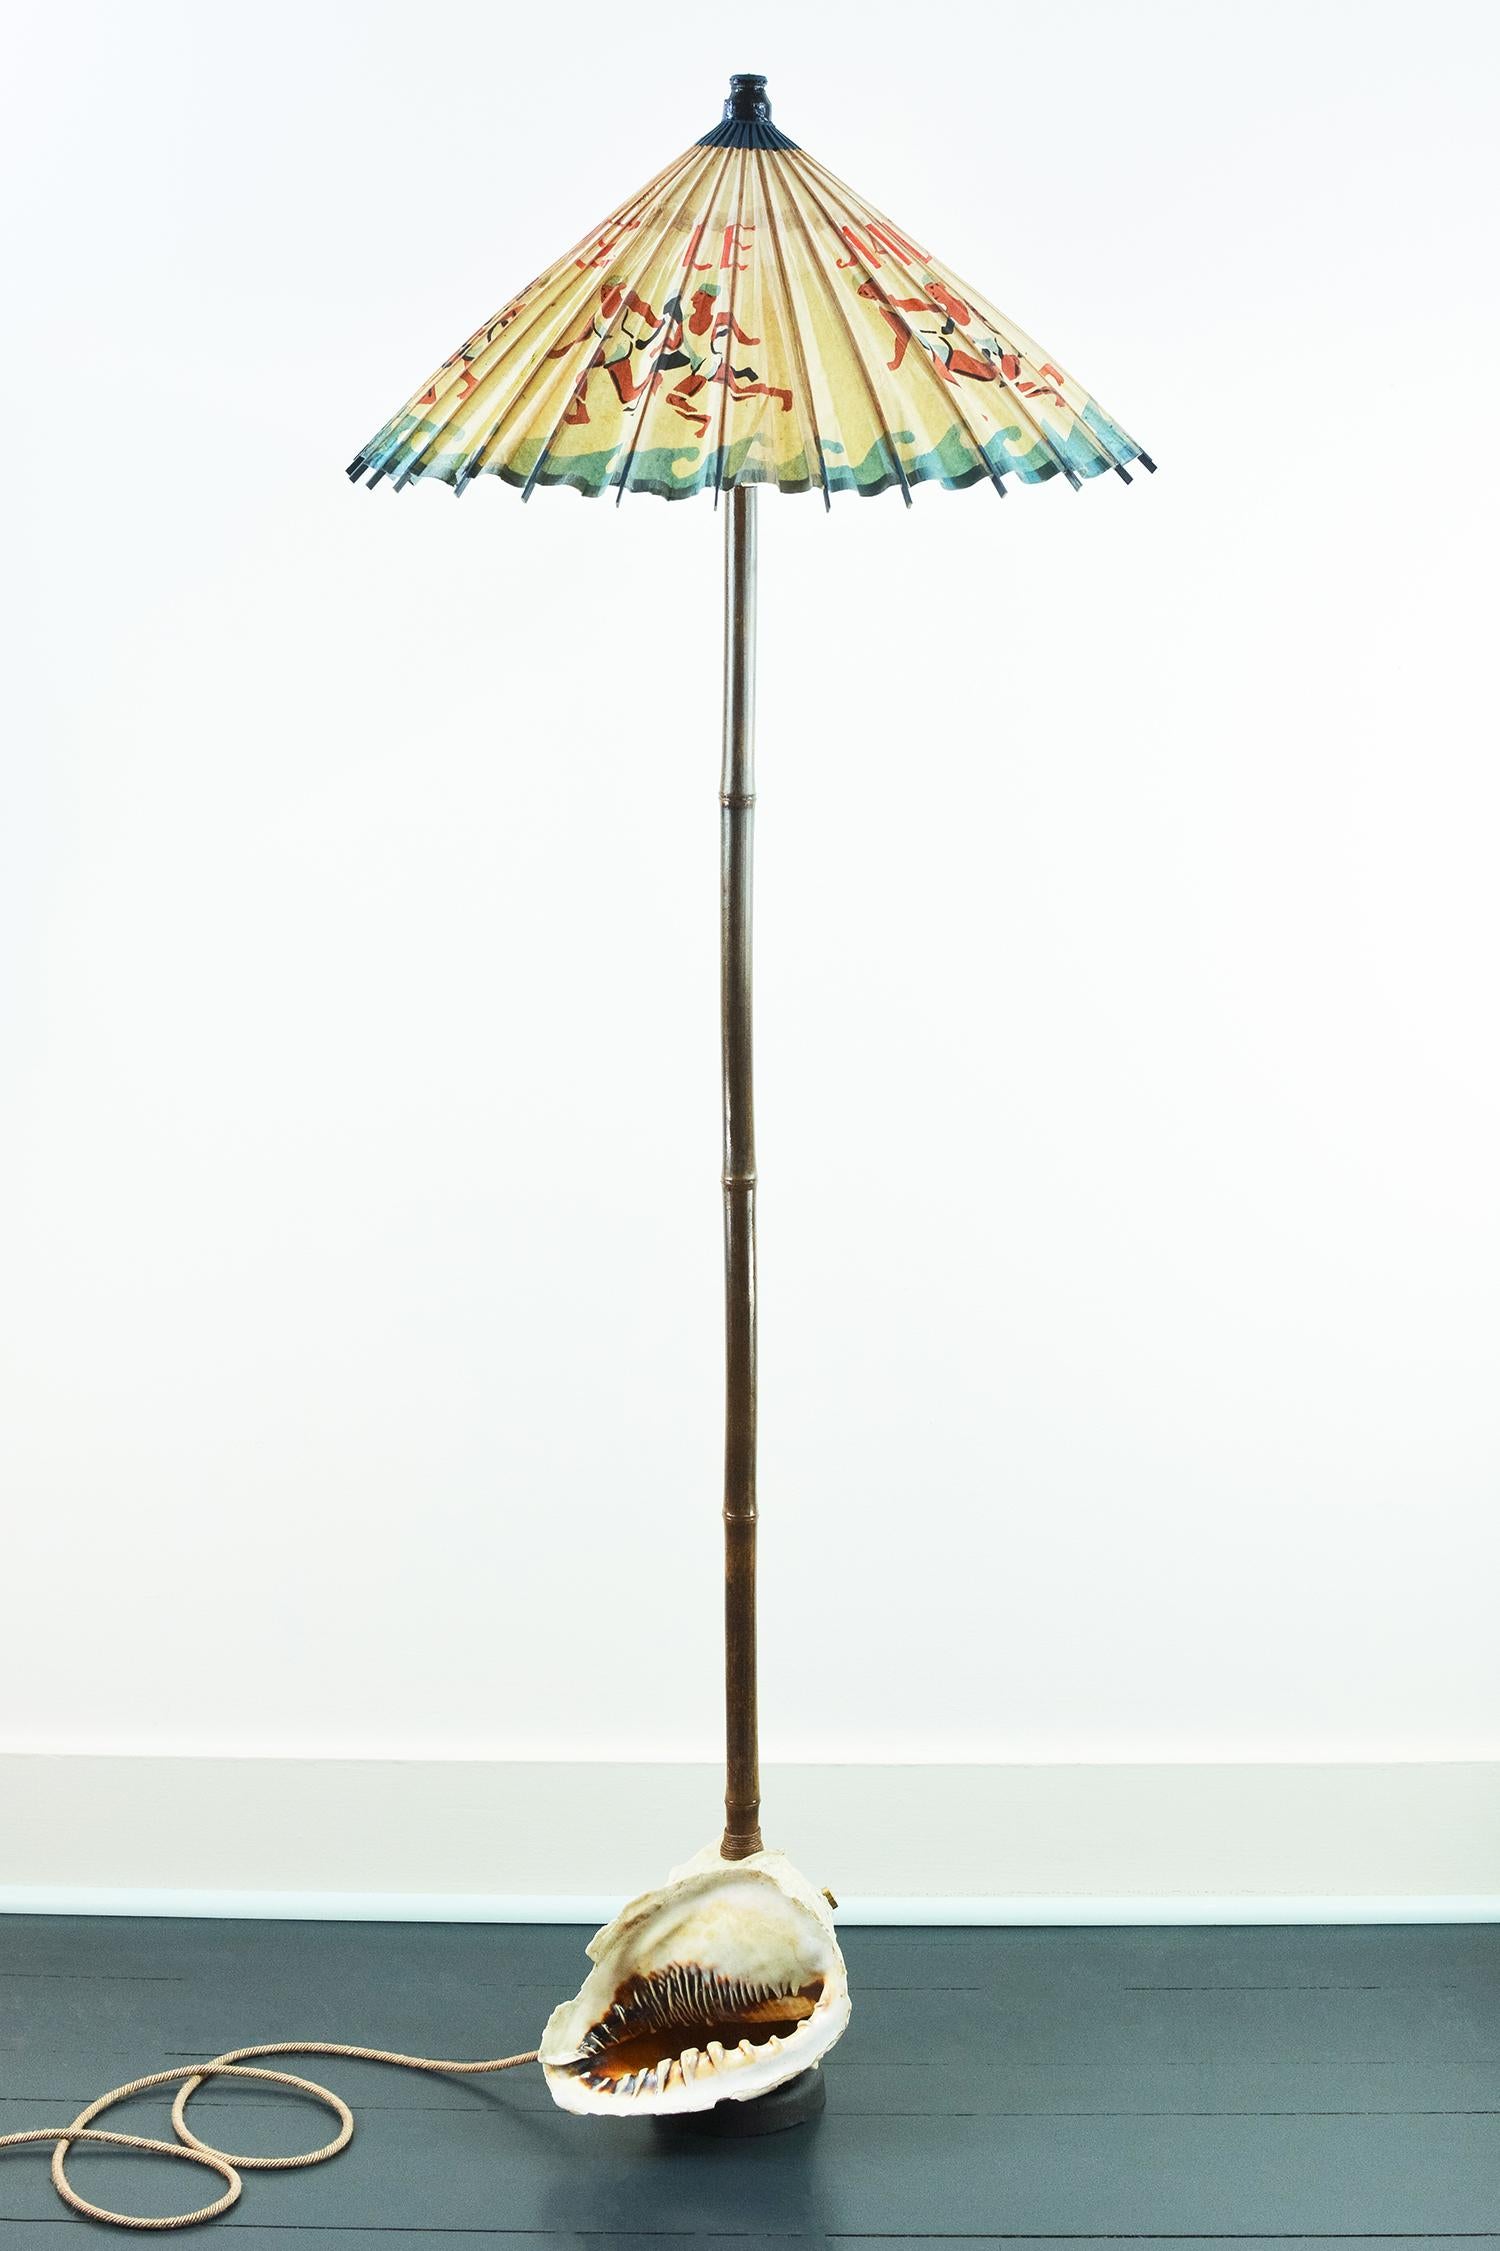 Modell Nr. 014 ist eine einzigartige Kunstlampe mit einem Reispapierschirm, der aus einem äußerst seltenen französischen Sonnenschirm aus dem Jahr 1919 besteht, der für eine Reihe von Kaltwasser-Badeanzügen wirbt.

Der Schirm sitzt auf einer